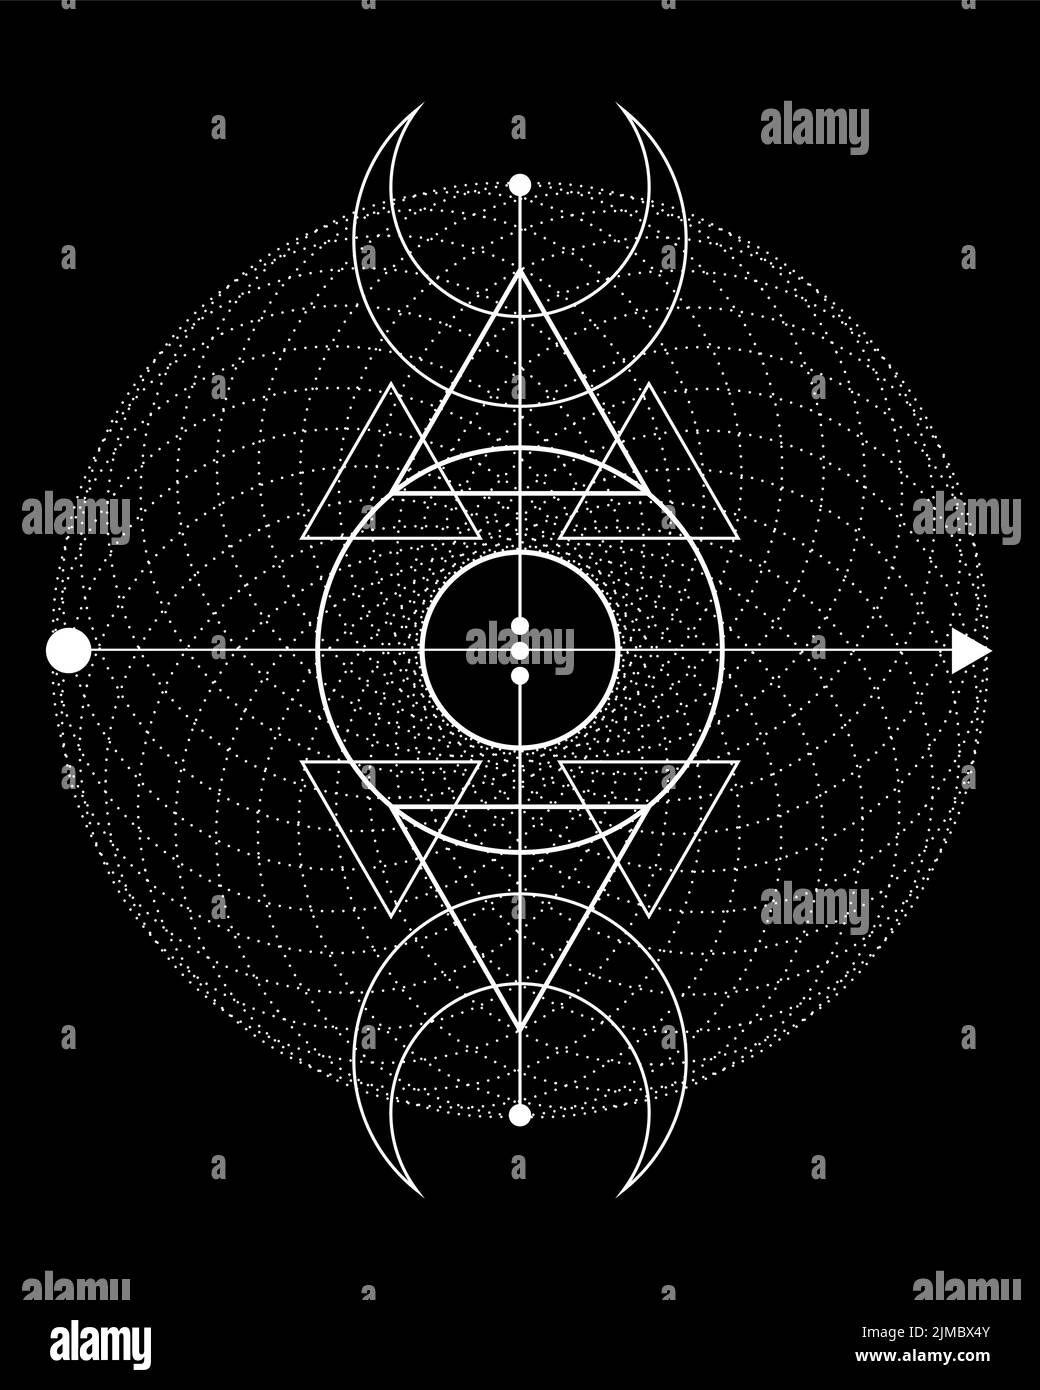 Triple lune magique. Symbole de la divinité viking, de la géométrie sacrée celtique, du tatouage du logo blanc Wiccan, des triangles ésotériques alchimie. Signe d'occultisme spirituel Illustration de Vecteur